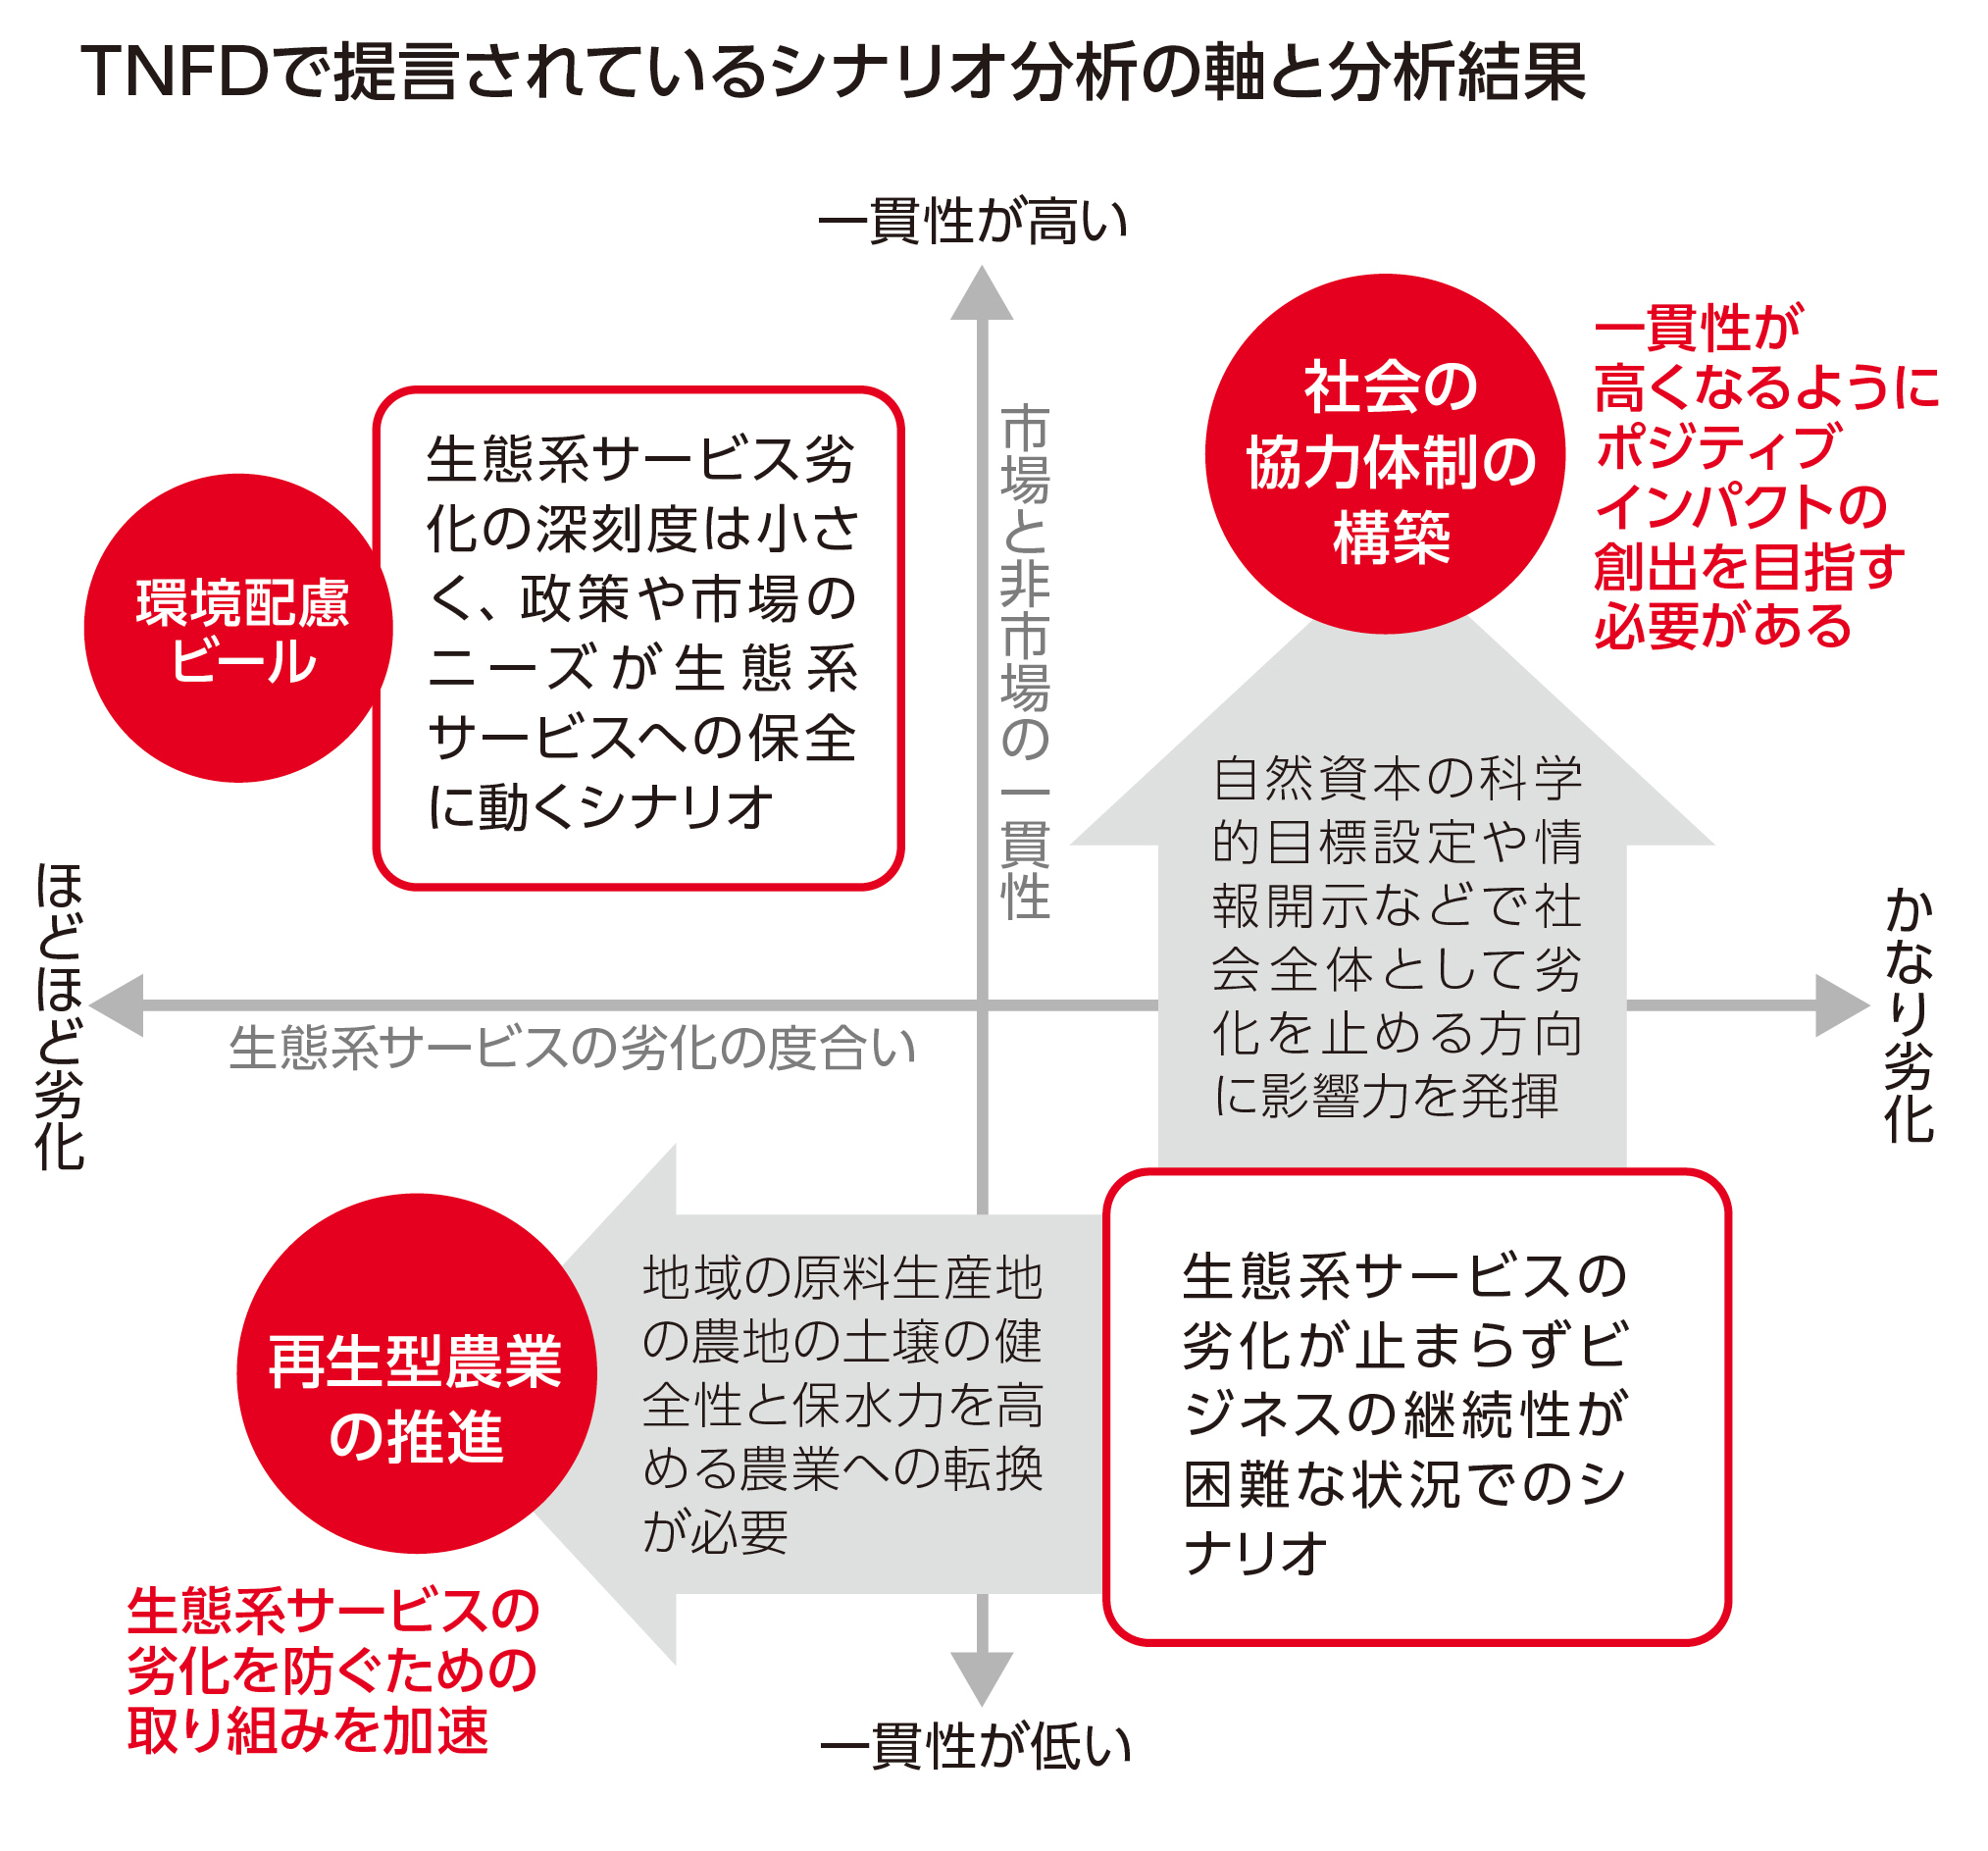 TNFDで提言されているシナリオ分析の軸と分析結果